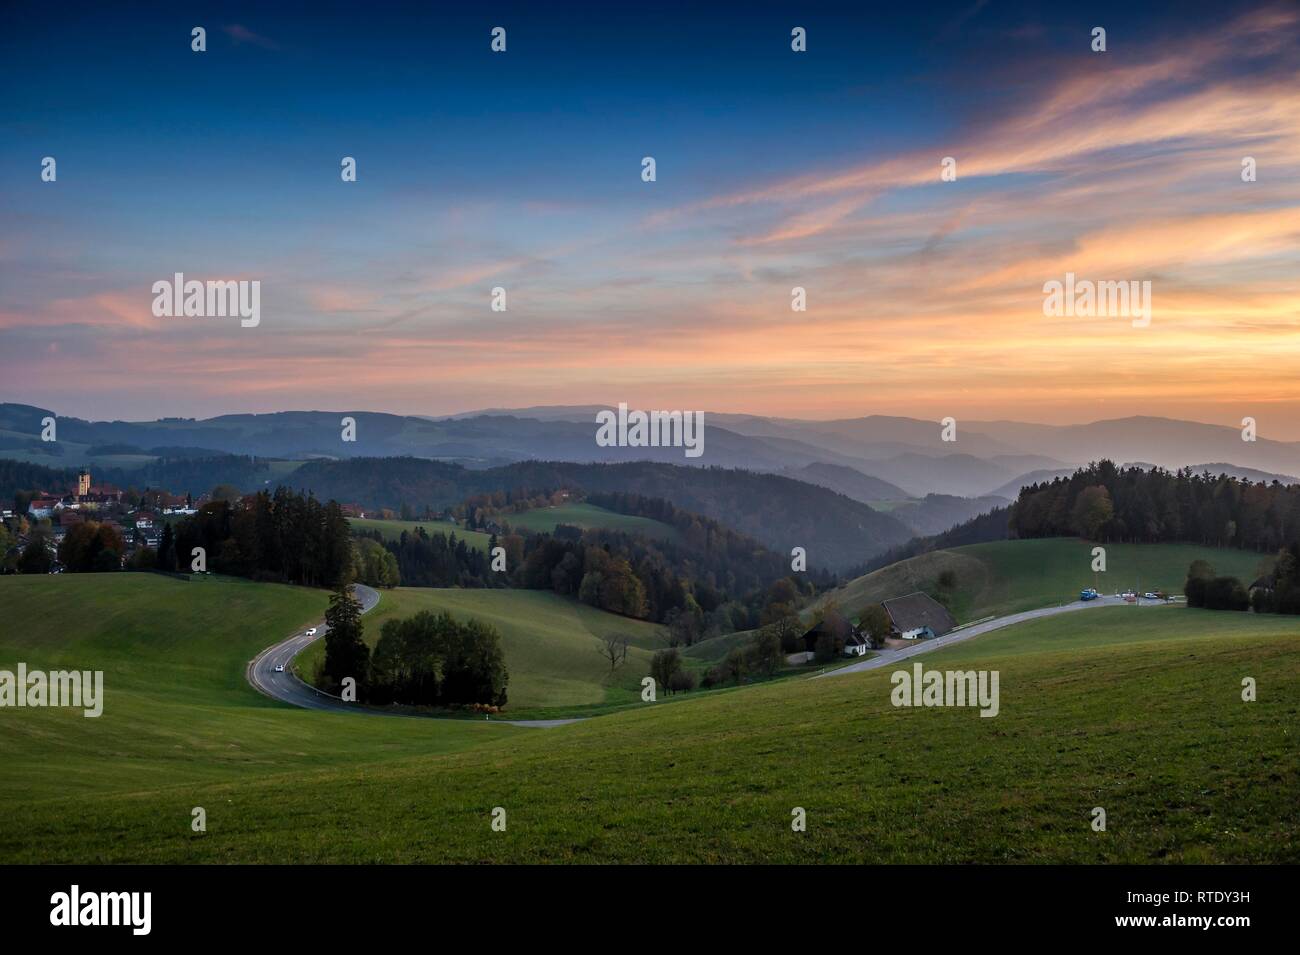 Vue sur paysage vallonné à l'automne, lumière du soir, près de St Märgen, Forêt Noire, Bade-Wurtemberg, Allemagne Banque D'Images